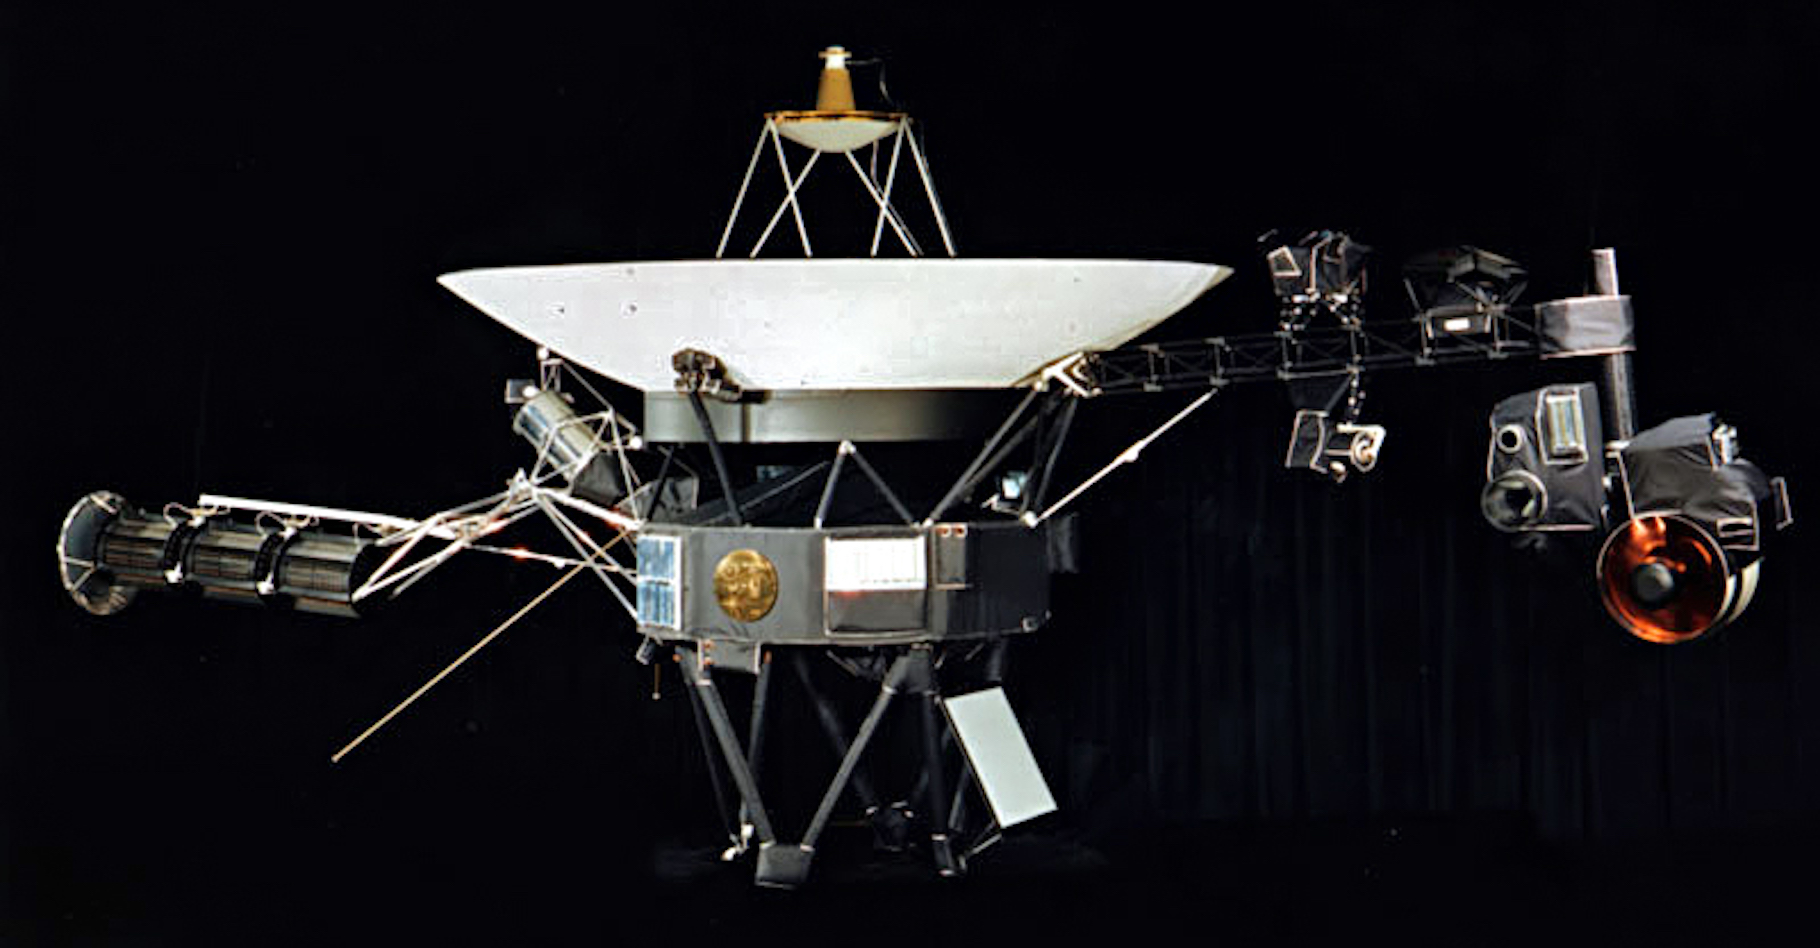 45 ans après son lancement, la sonde Voyager 1, ici en maquette, poursuit son périple dans l’espace interstellaire. © Nasa